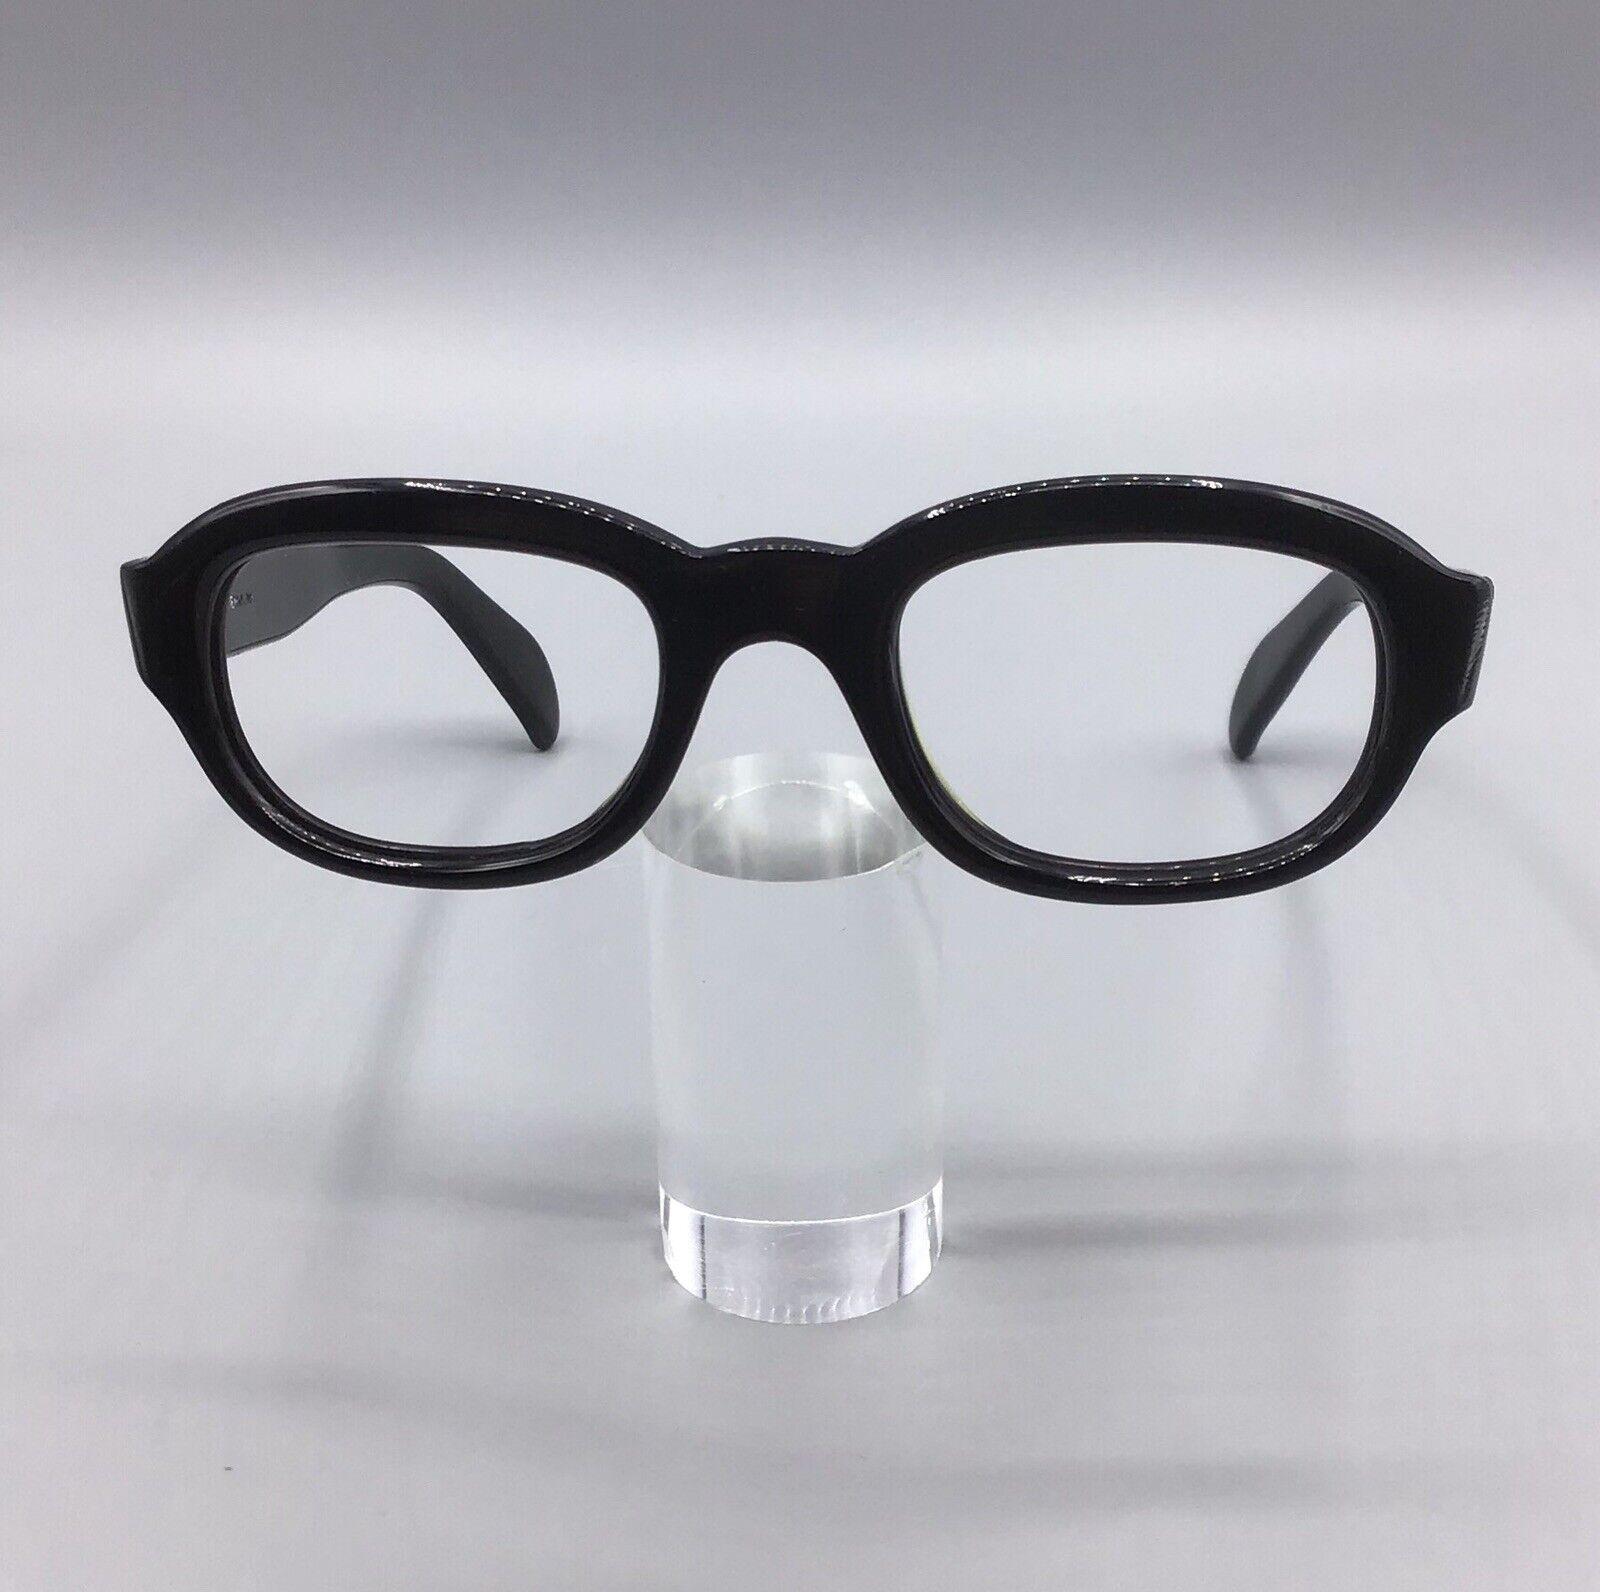 ViennaLine eyewear occhiale vintage brillen lunettes 140-5 1/2 60s frame